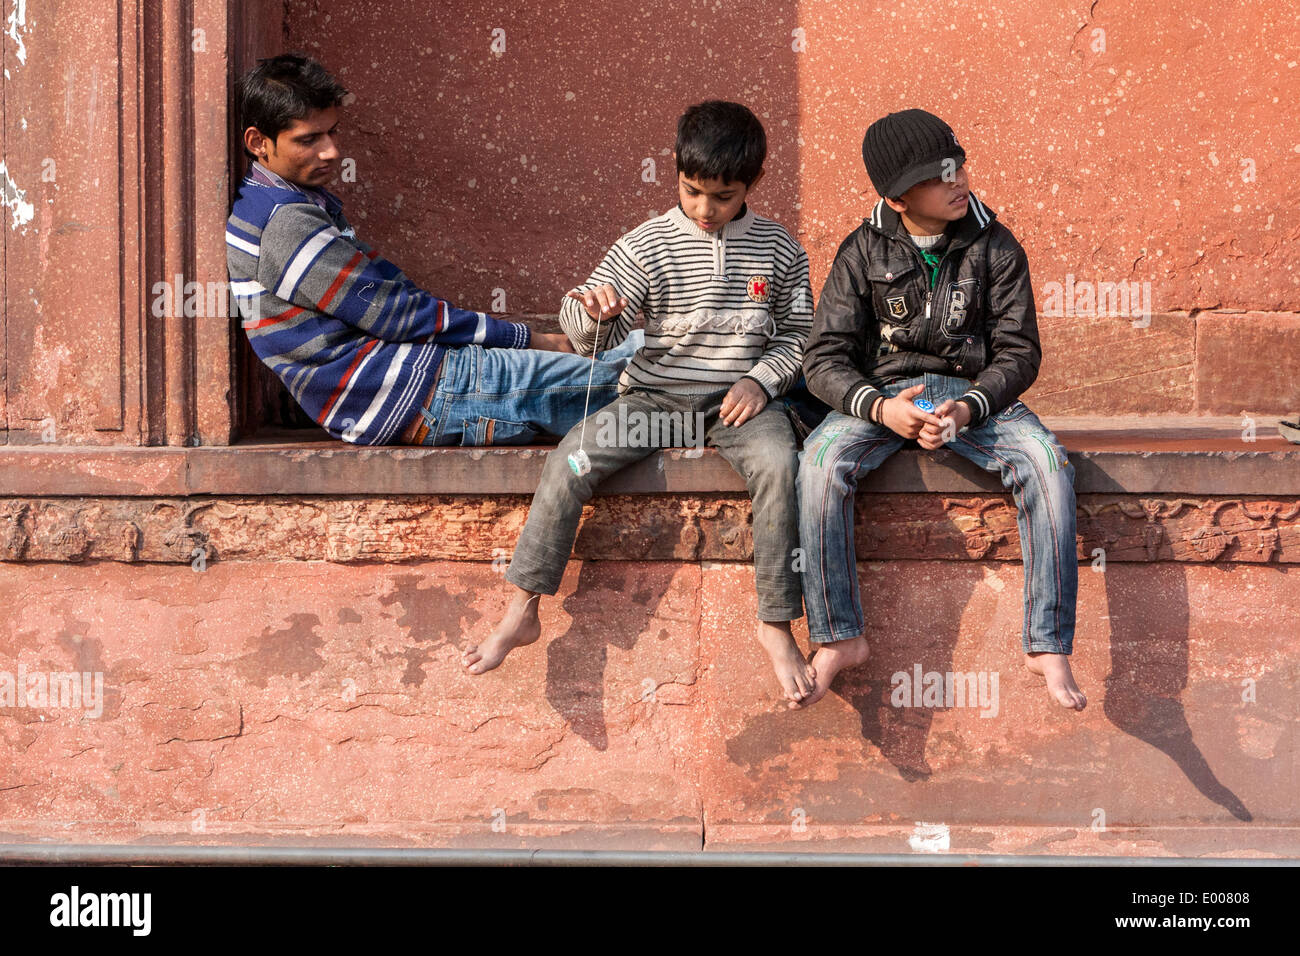 Neu-Delhi, Indien. Junge mit Yo-yo beim Sitzen mit Freunden in der Jama Masjid (Freitagsmoschee) spielen. Stockfoto